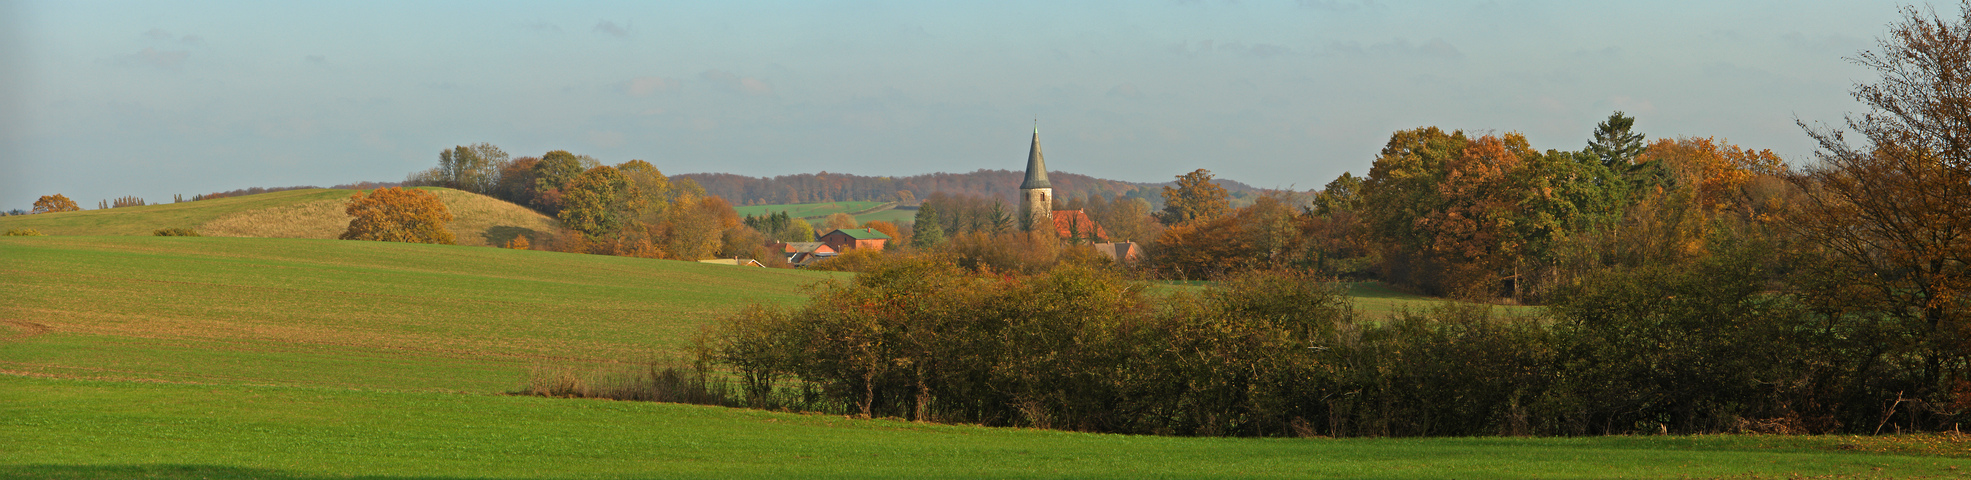 Herbstlicher Ausblick auf Neukirchen bei Malente